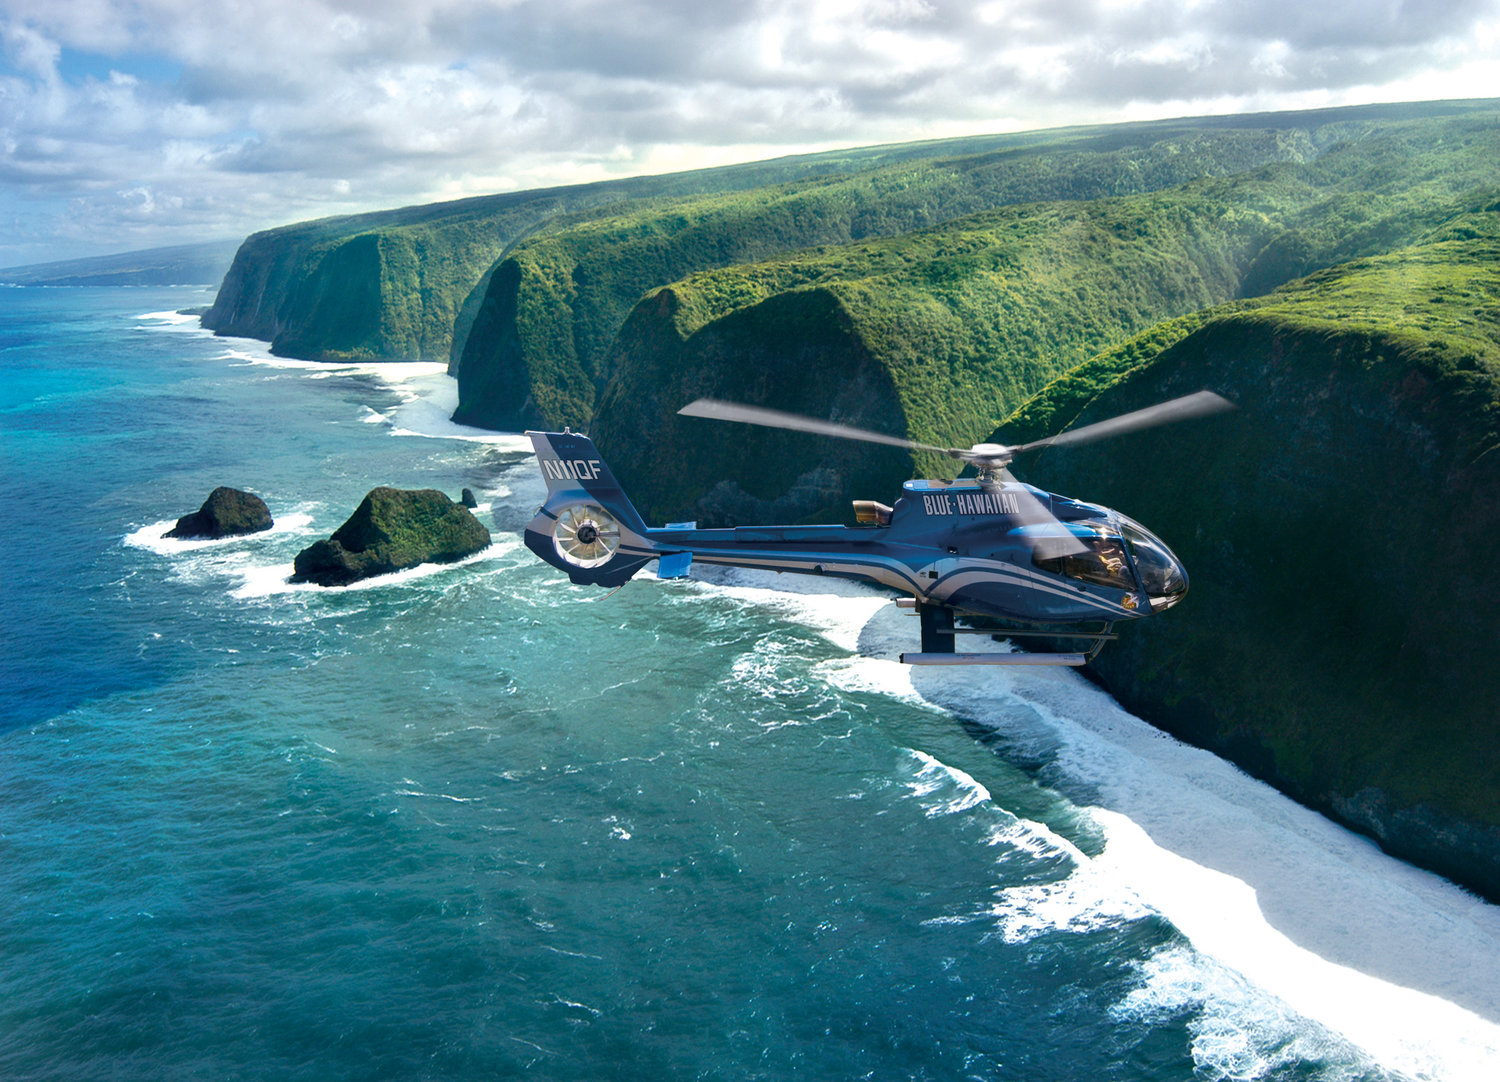 manipulere Mindst Brug af en computer Helicopter Tours — Big Island Helicopter Tours | Volcano Helicopter Tour